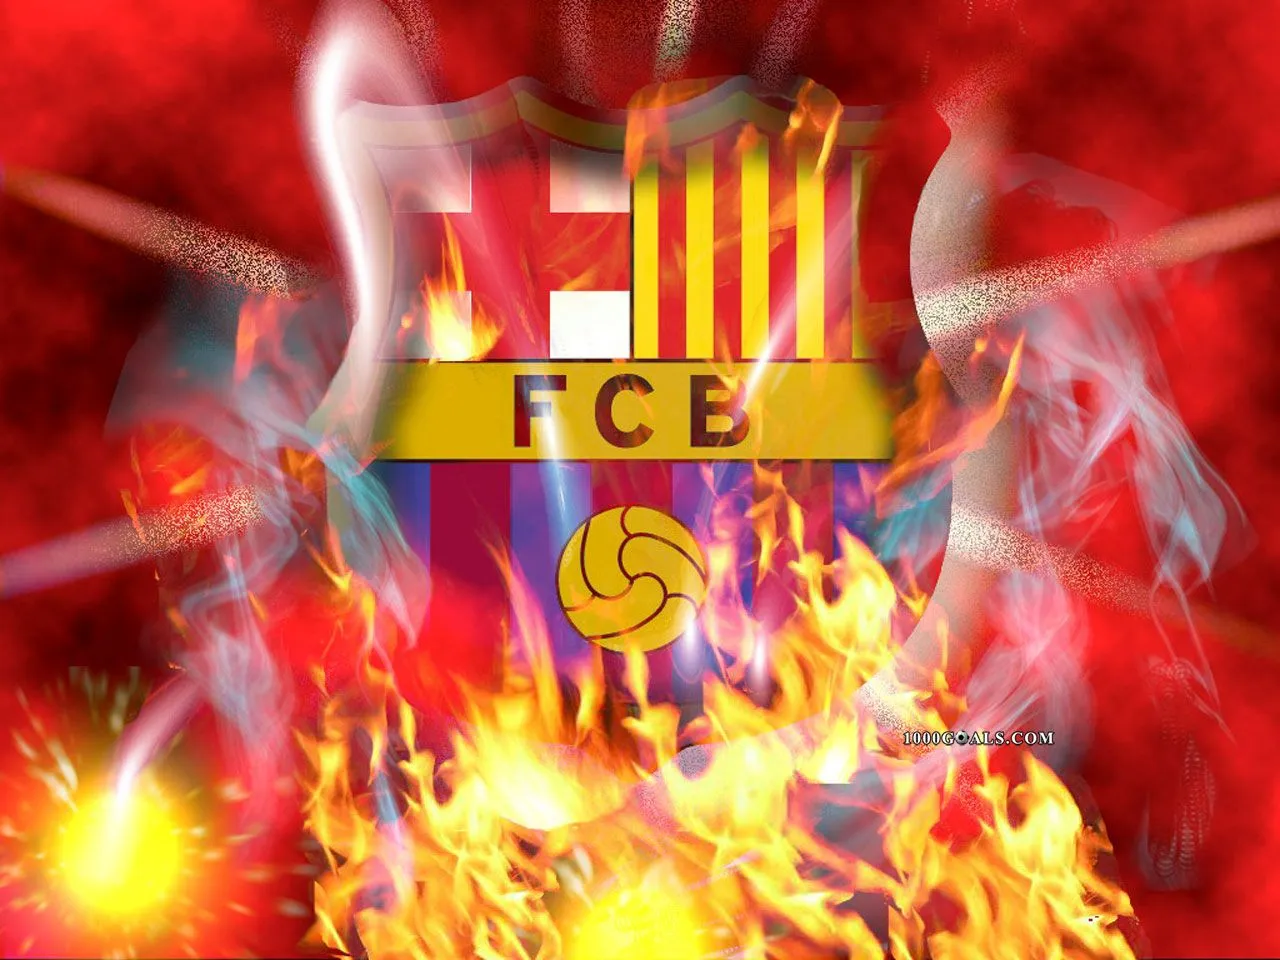  ... . pa todos los fanaticos del barcelona el real madrid son unos lokos